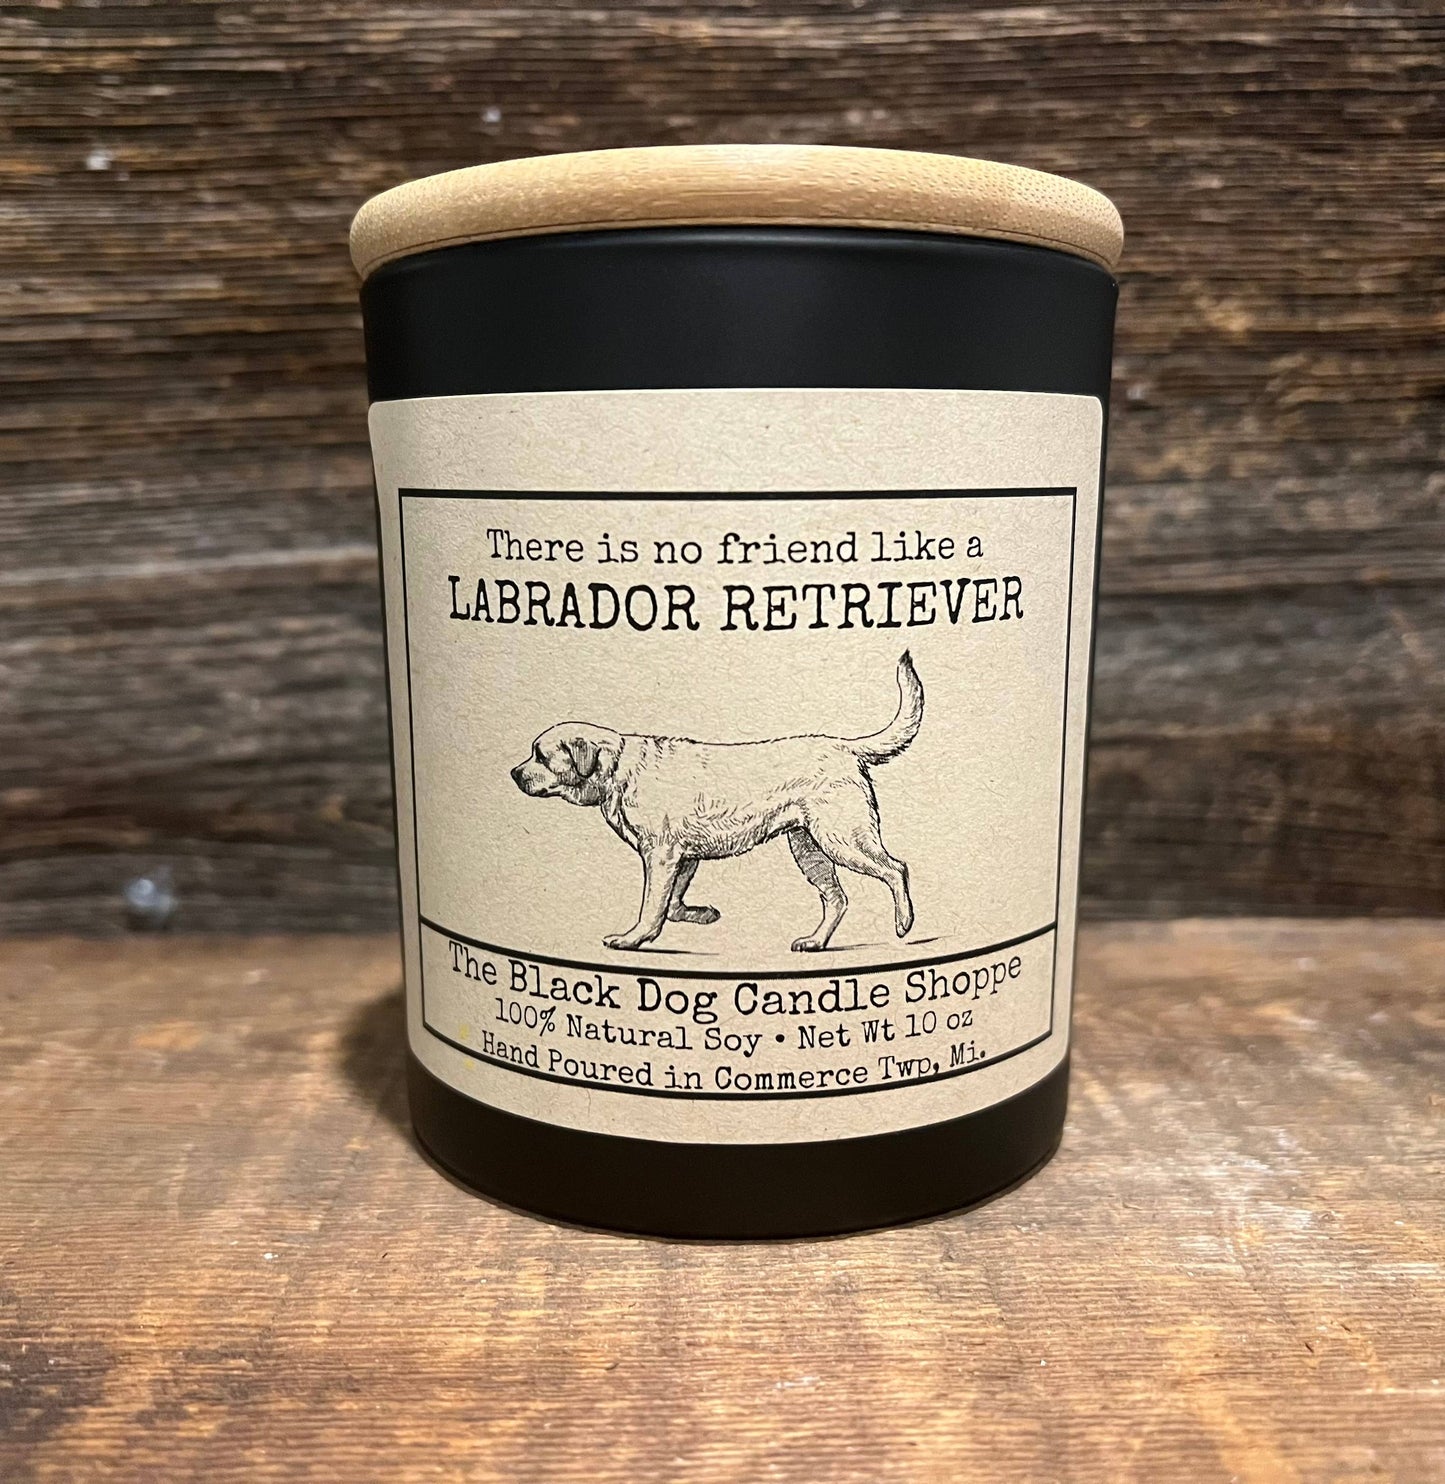 The Black Dog Candle Shoppe - Labrador Retriever Candle